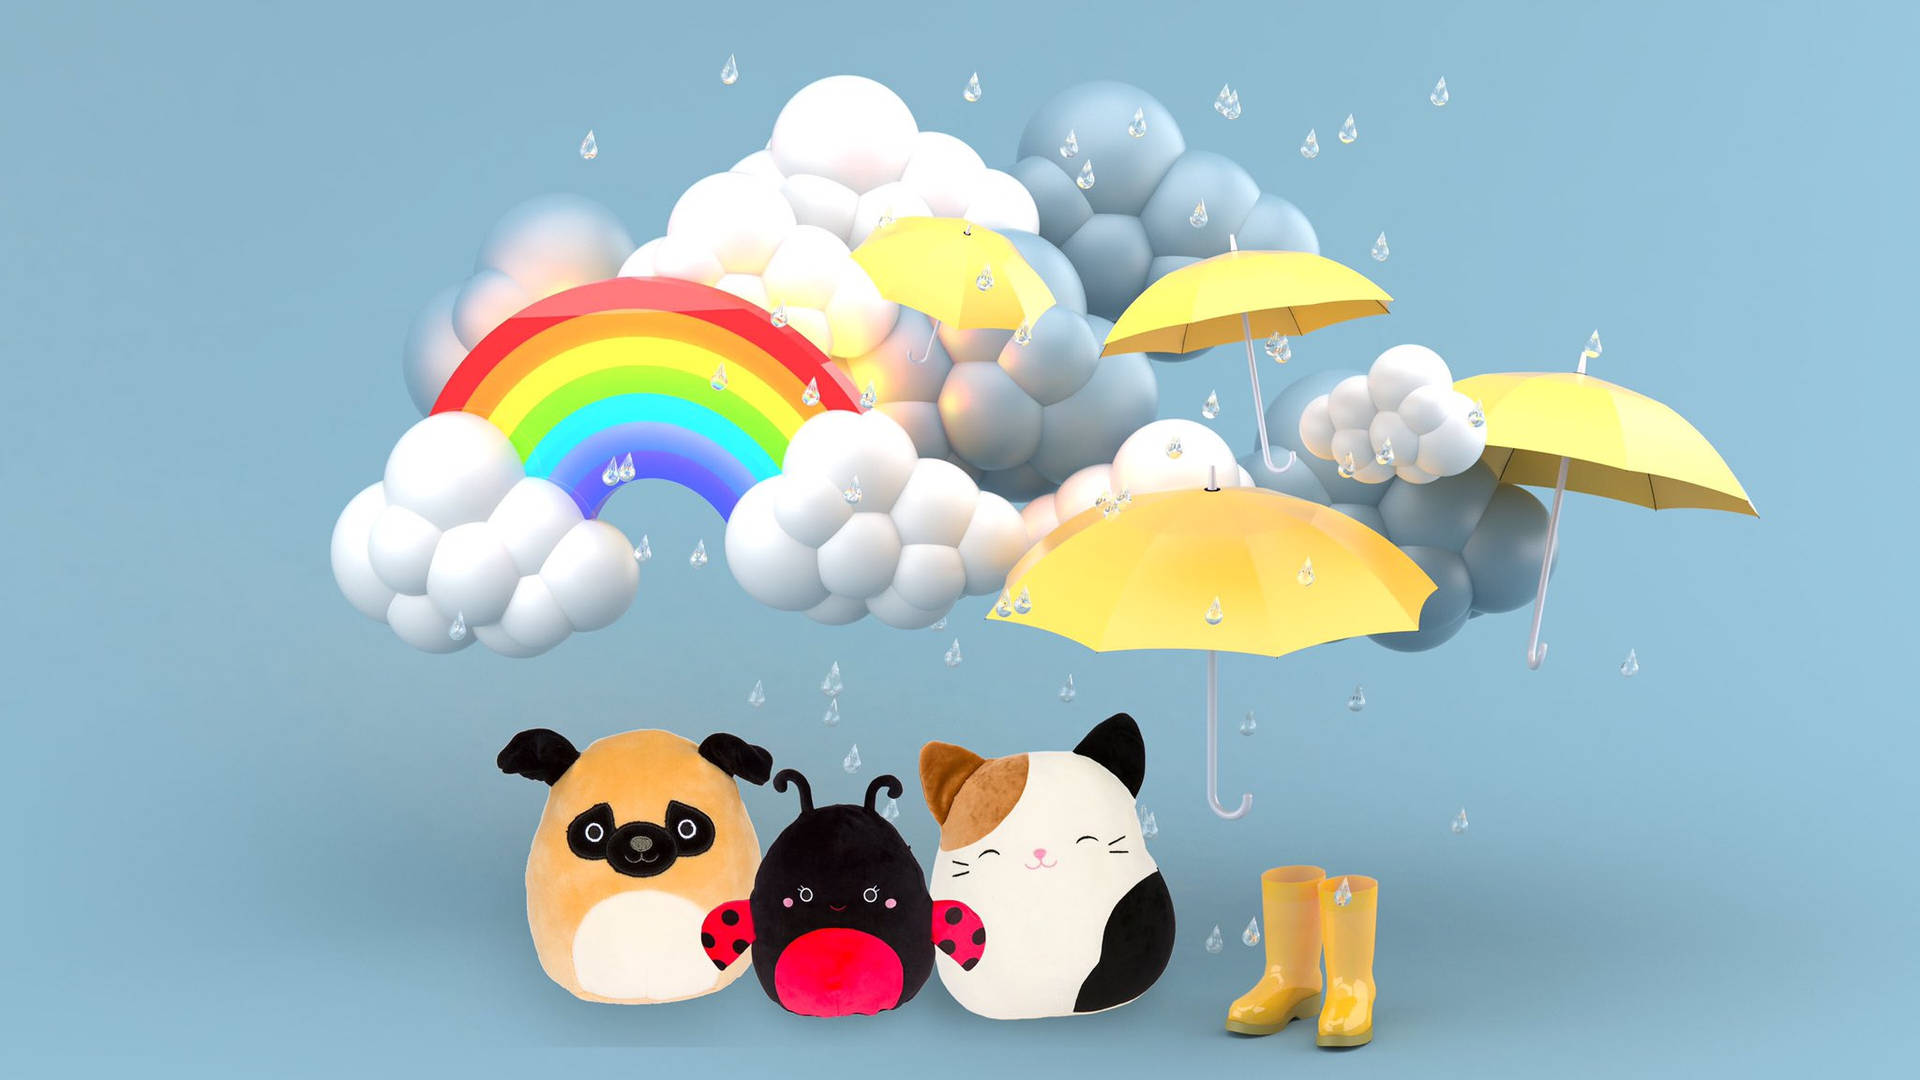 Squishmallows Rainy Weather Theme Wallpaper